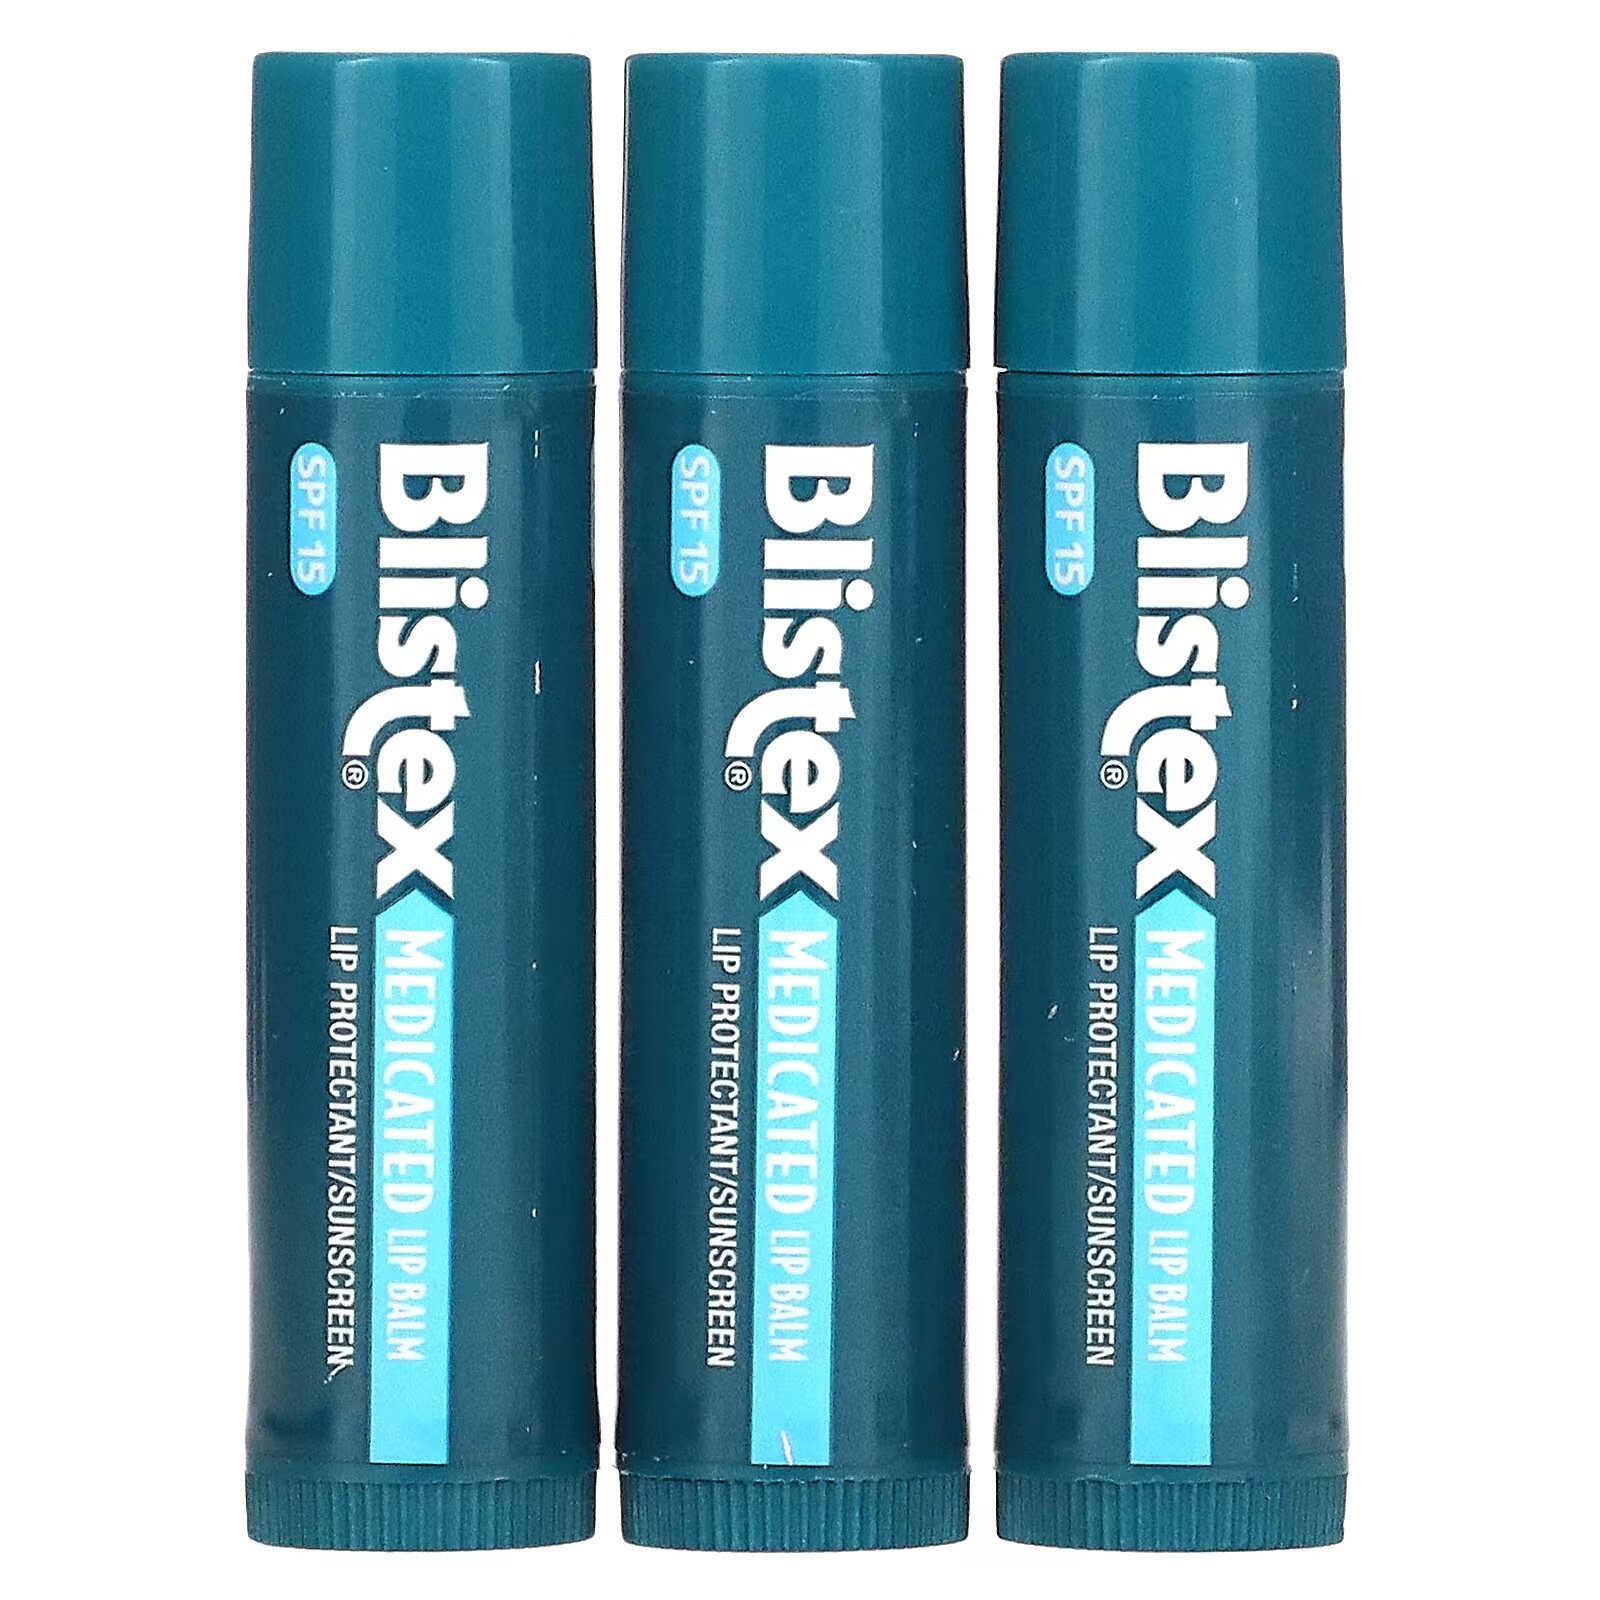 Заживляющий бальзам для губ Blistex с солнцезащитным фильтром SPF 15, в упаковке 3 бальзама по 4,25 г blistex five star lip protection spf 30 4 25 г 15 унций